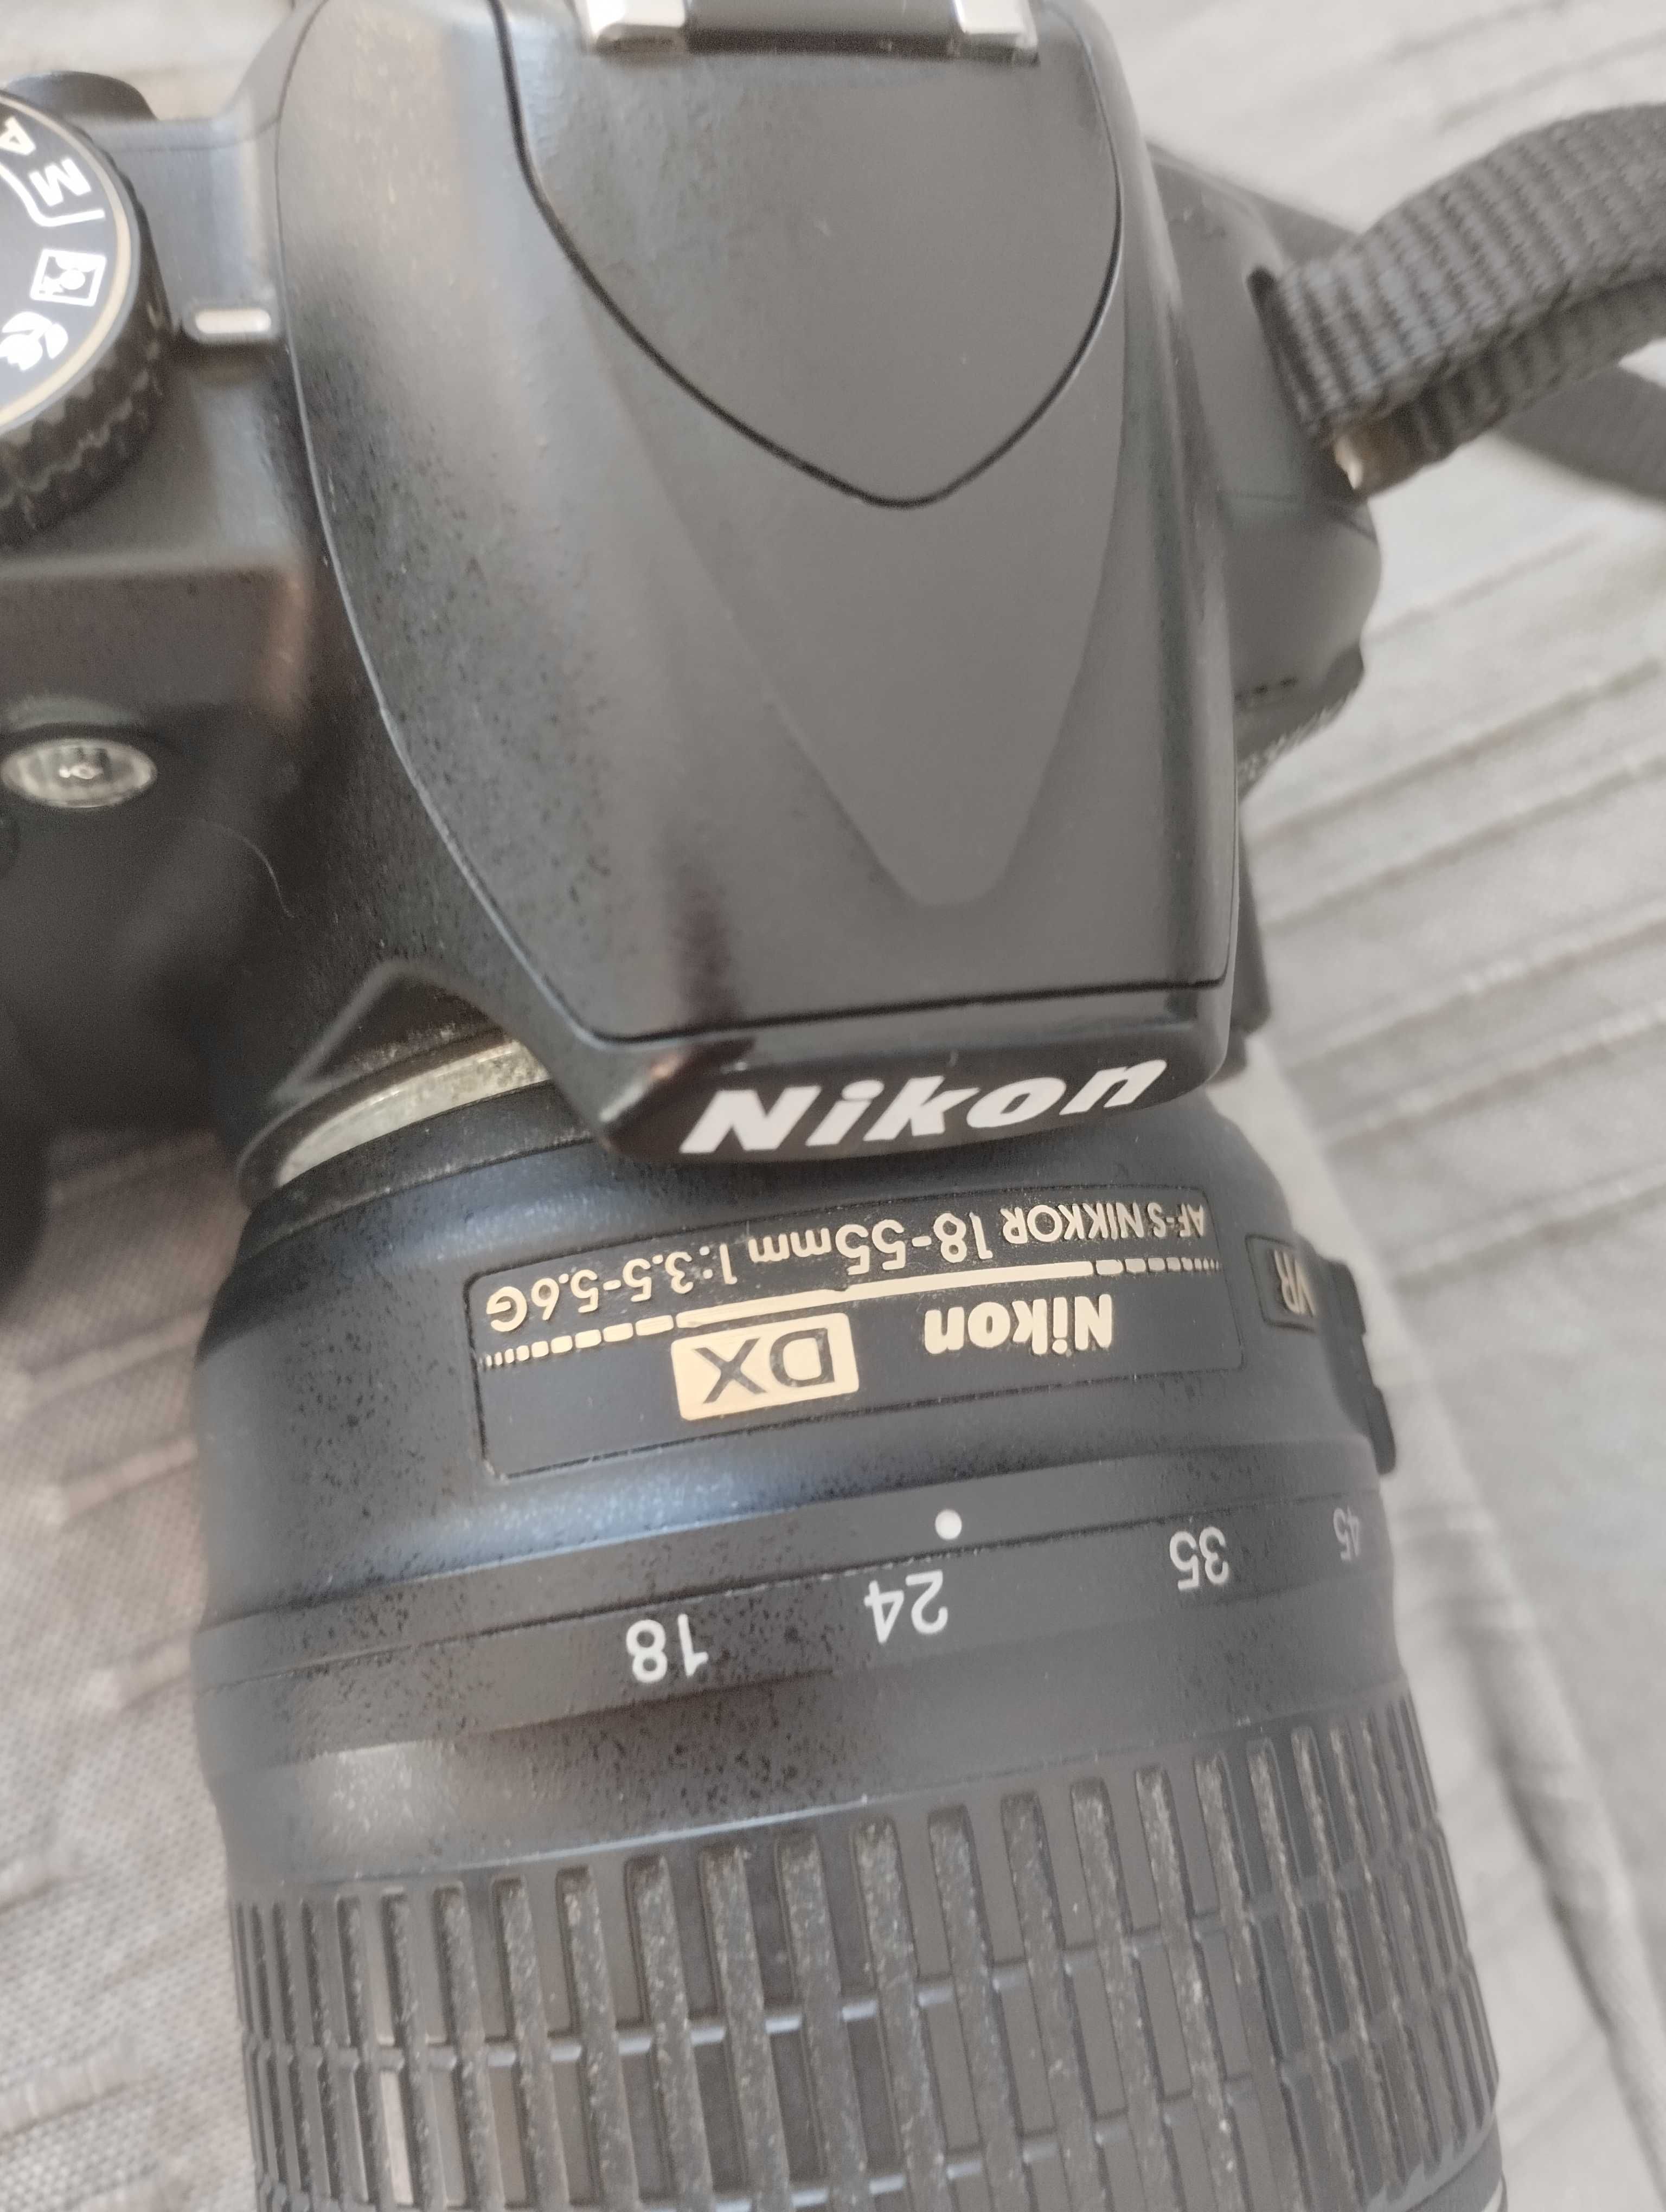 Камера Nikon 3100